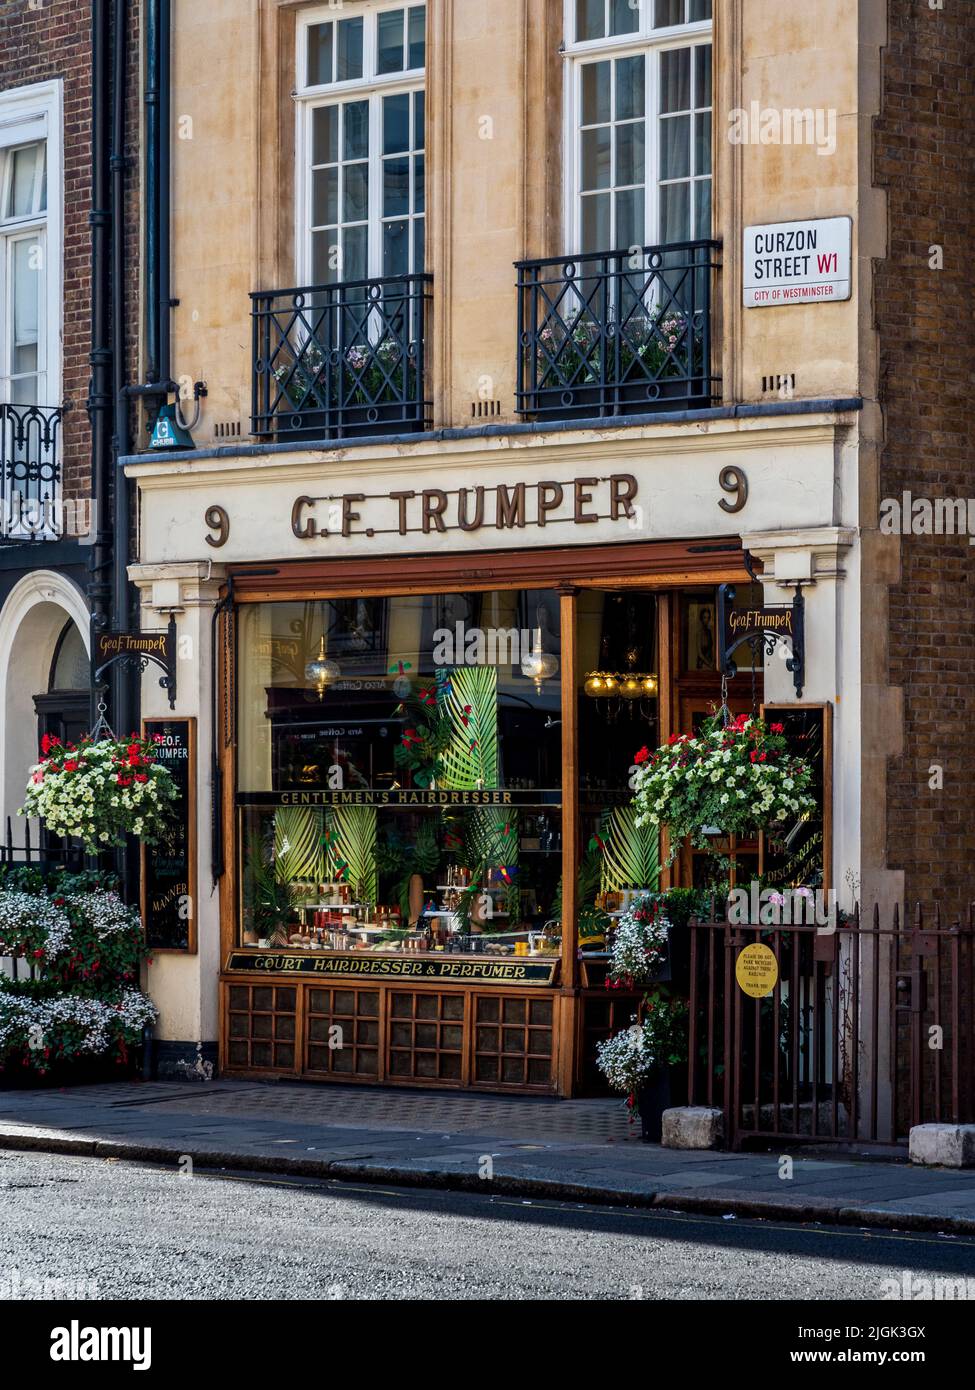 G F Trumper sur Curzon St Mayfair Londres - George F Trumper ou Geo. F. Trumper est un barbier, coiffeur et parfumeur britannique, fondé en 1875, à Londres. Banque D'Images